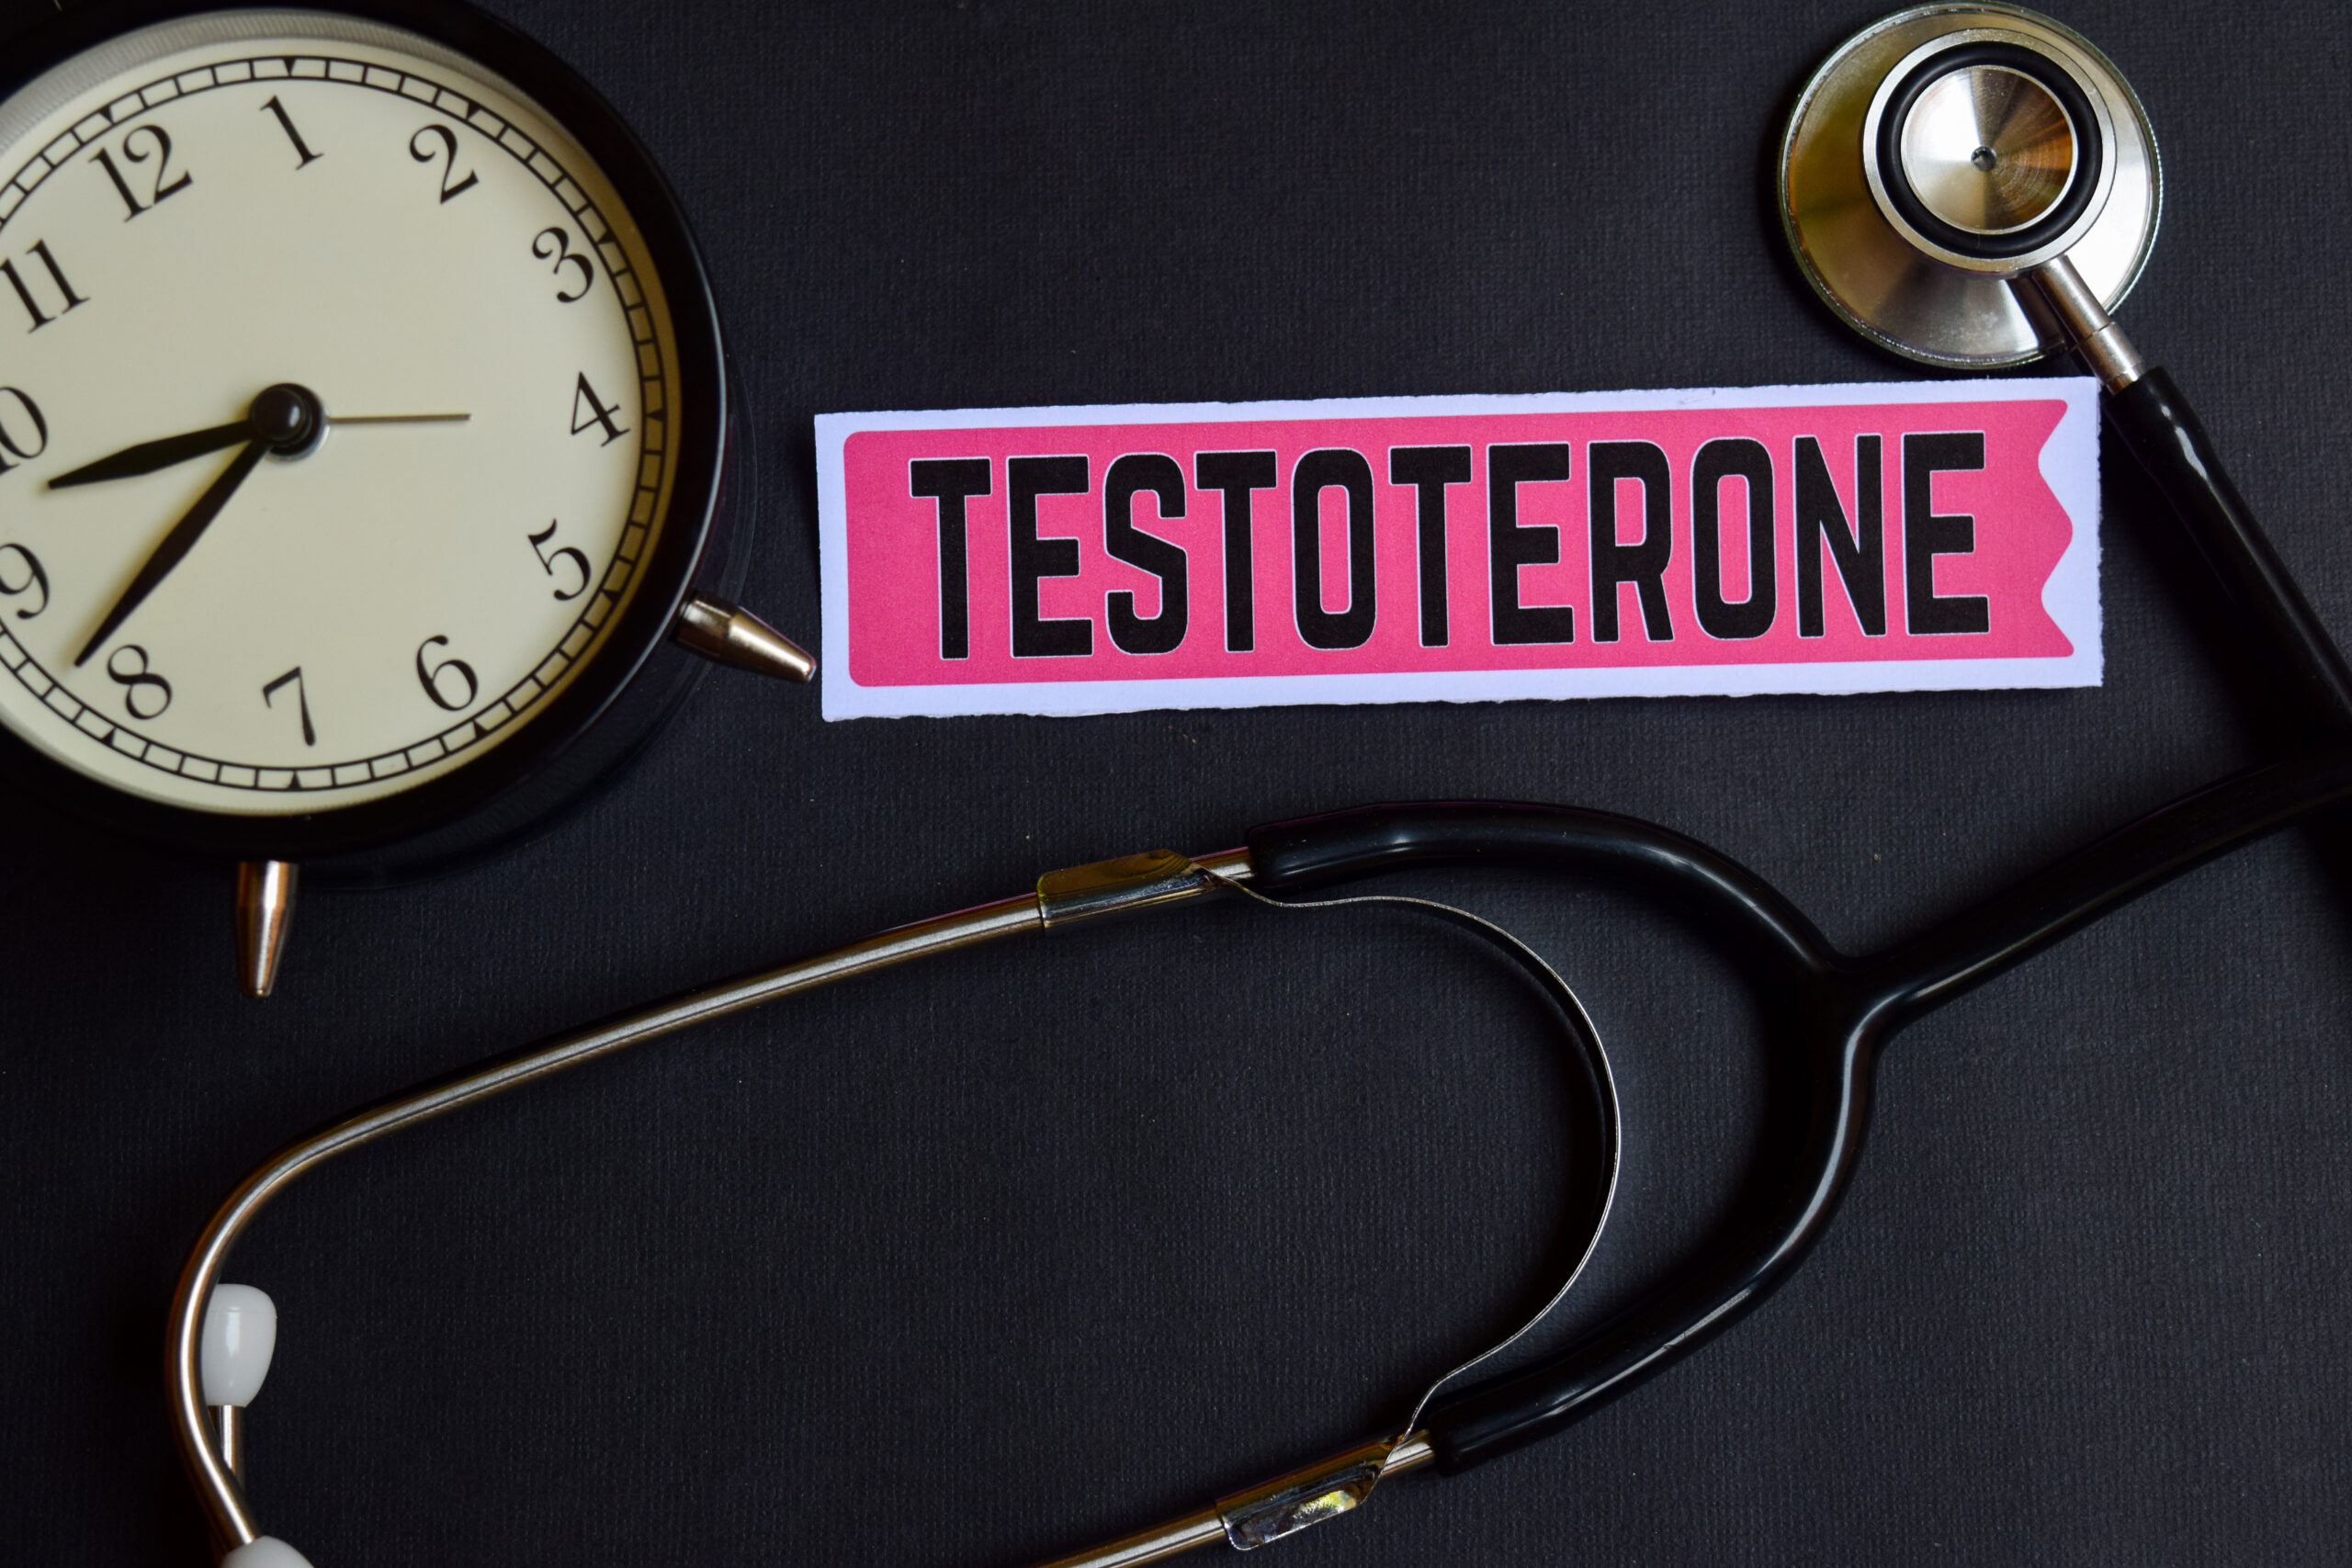 El chip de testosterona implica el uso de un dispositivo implantable para mantener niveles adecuados de esta hormona, aliviando síntomas asociados con su déficit.